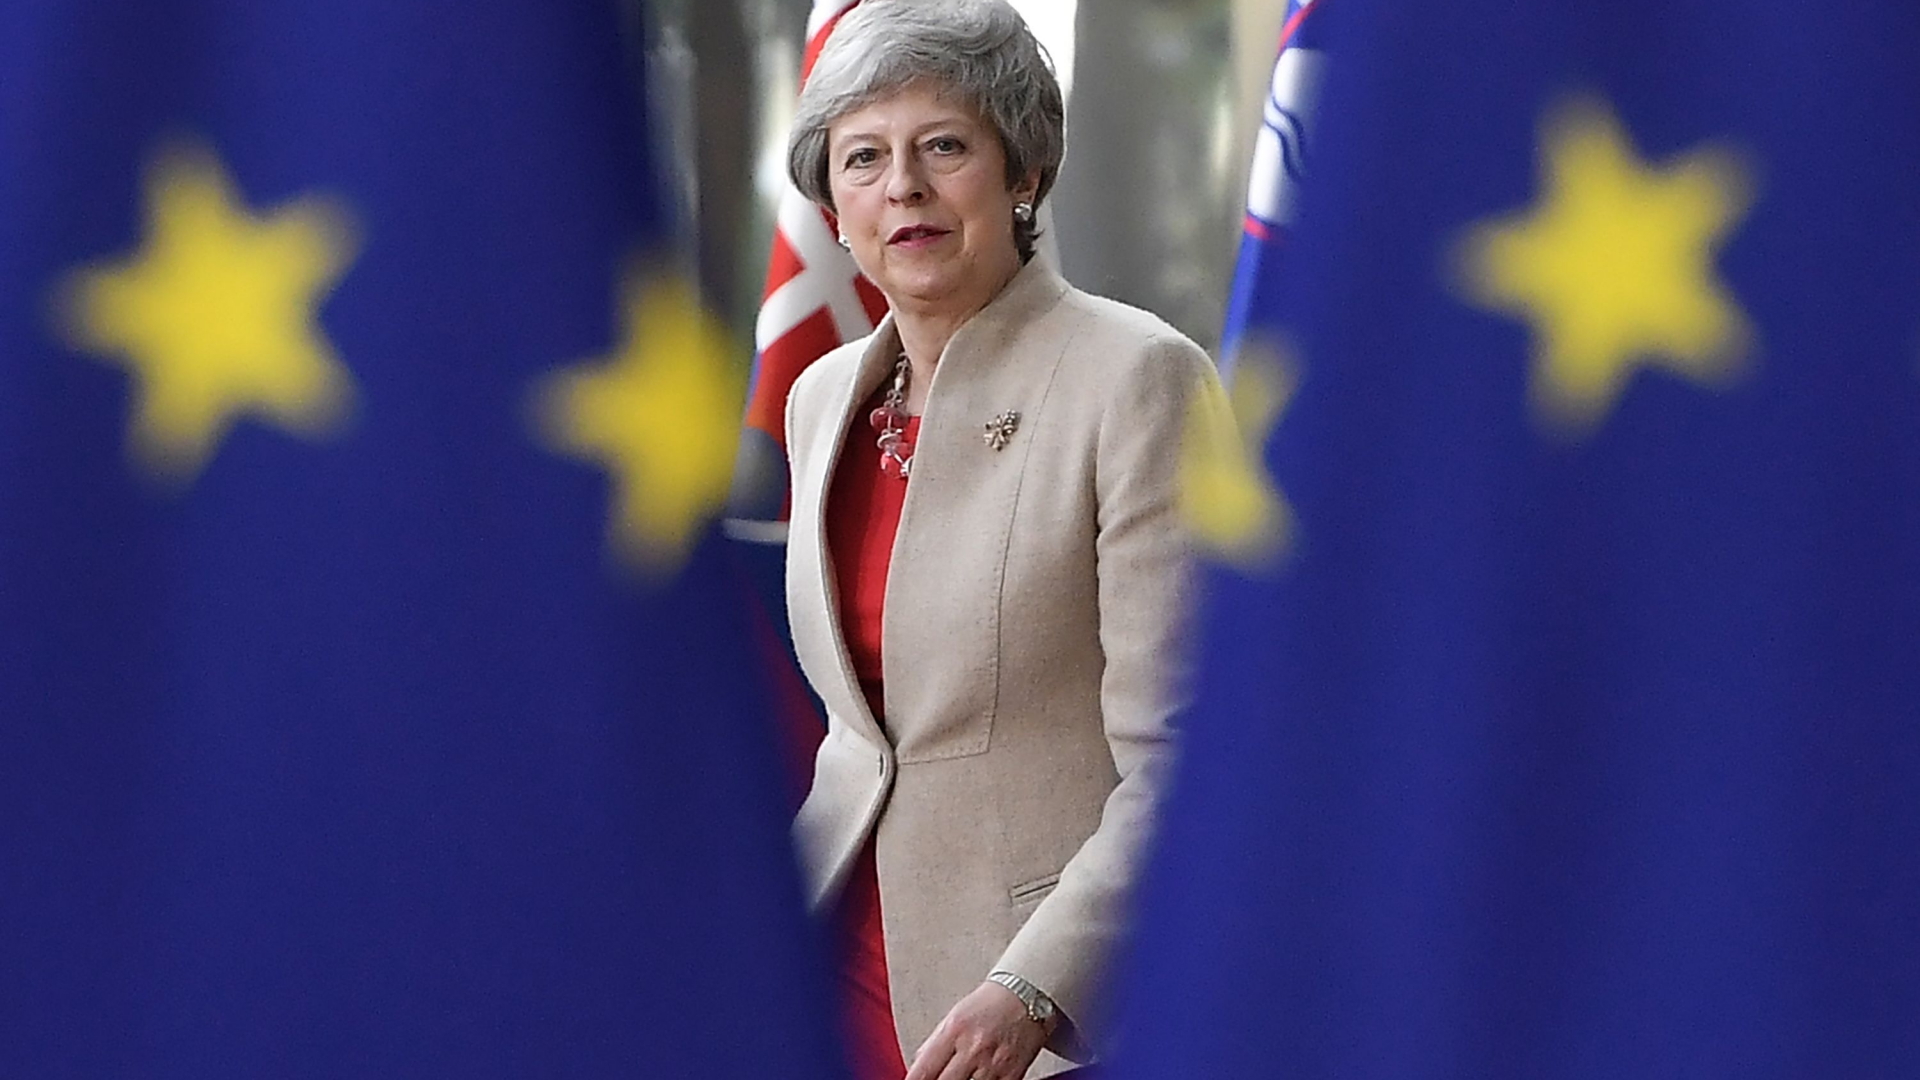 Die britische Premierministerin Theresa May blickt durch zwei EU-Fahnen hindurch.